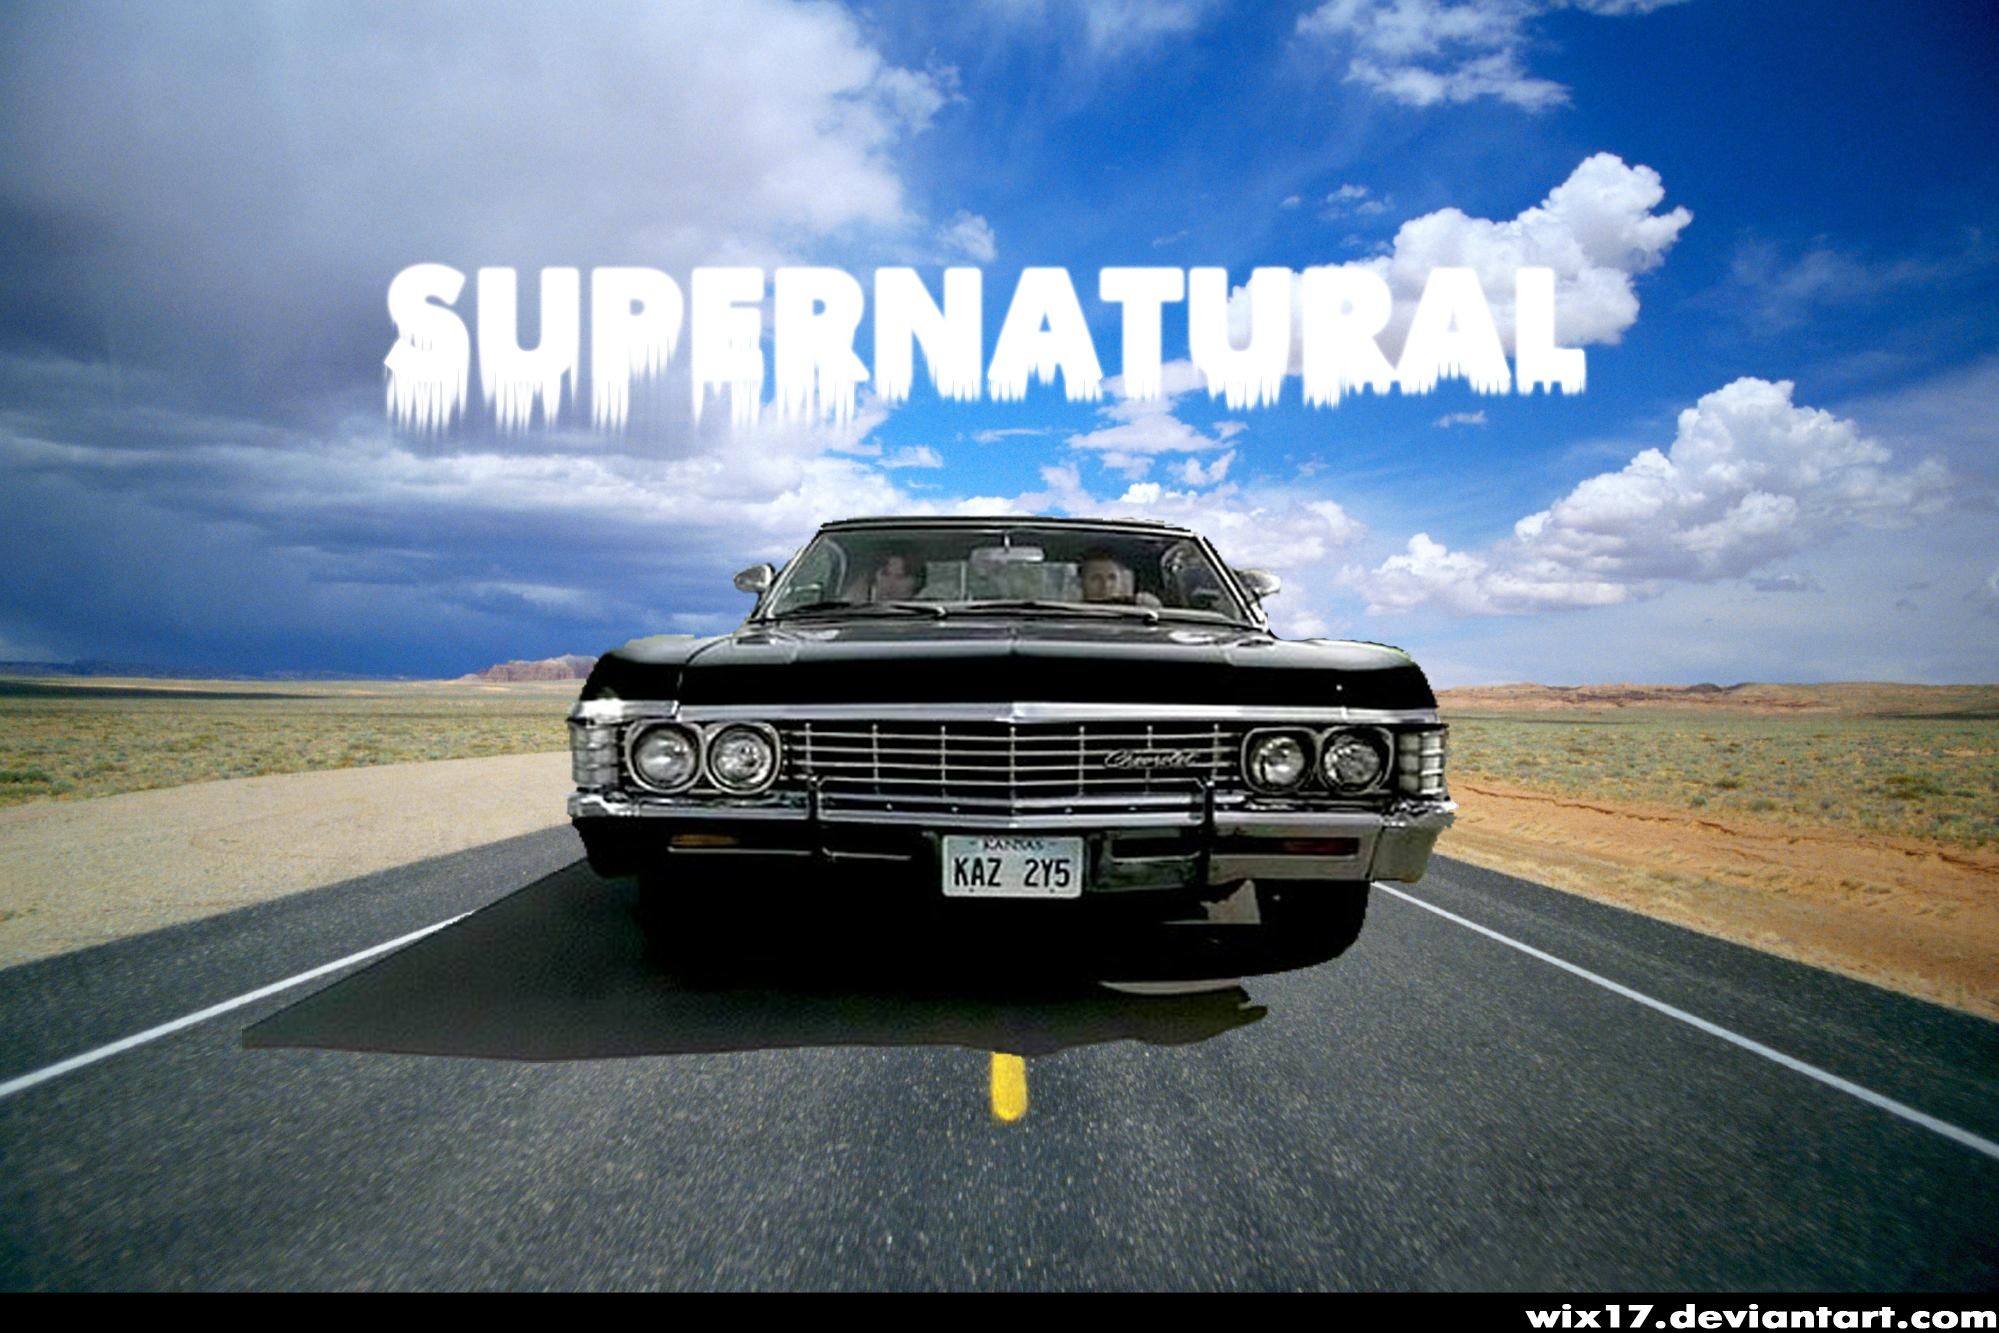 Supernatural Background Impala images